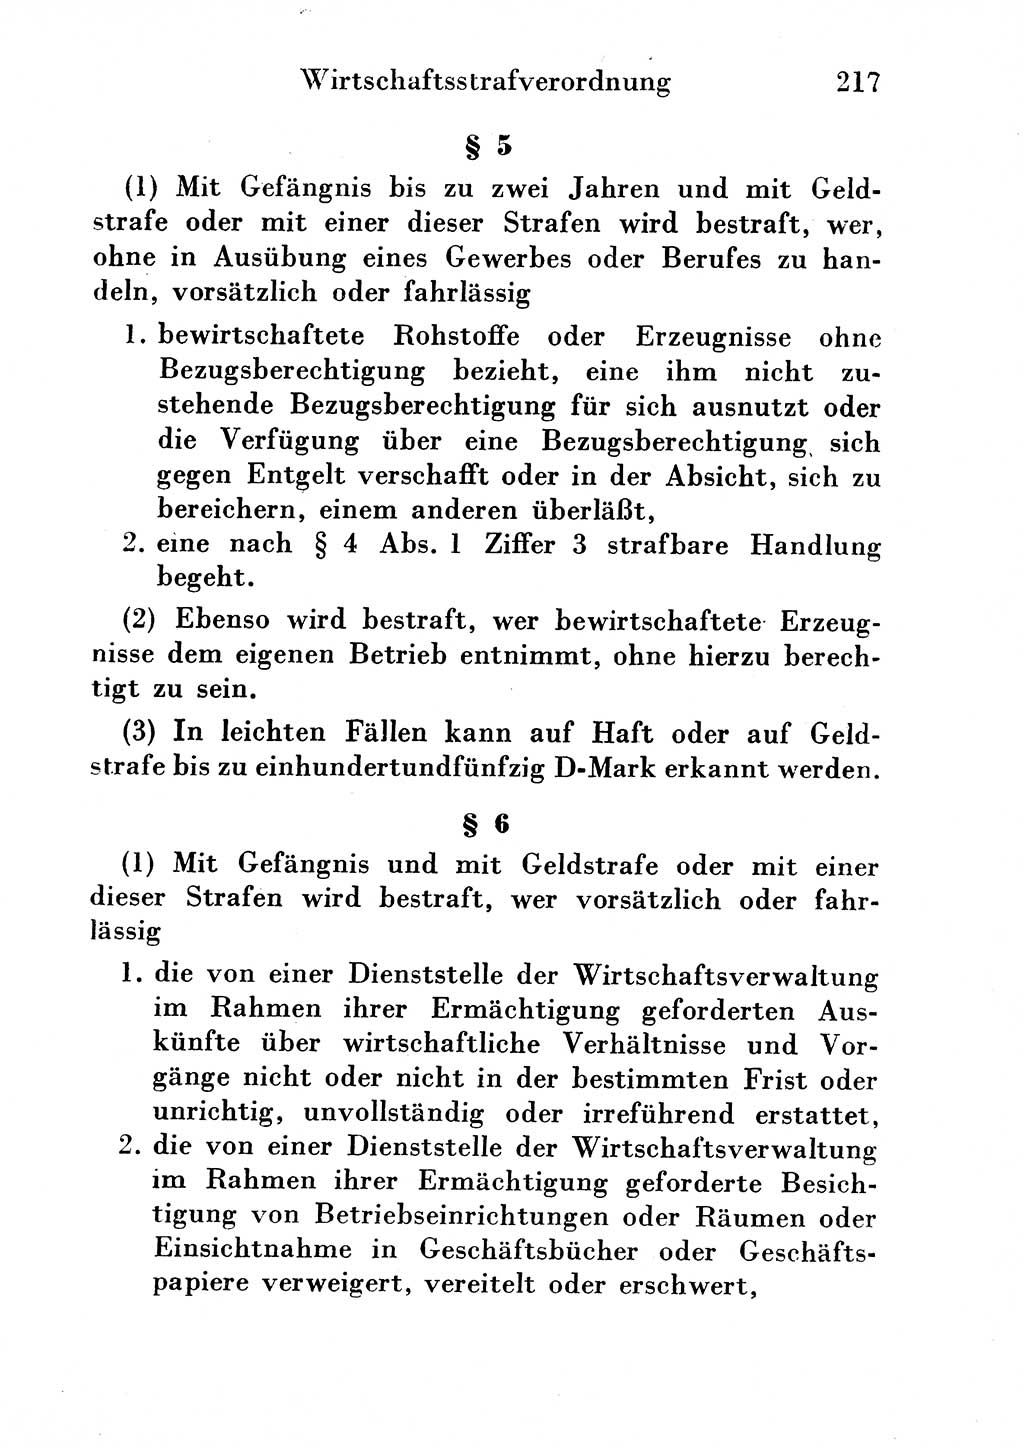 Strafgesetzbuch (StGB) und andere Strafgesetze [Deutsche Demokratische Republik (DDR)] 1954, Seite 217 (StGB Strafges. DDR 1954, S. 217)